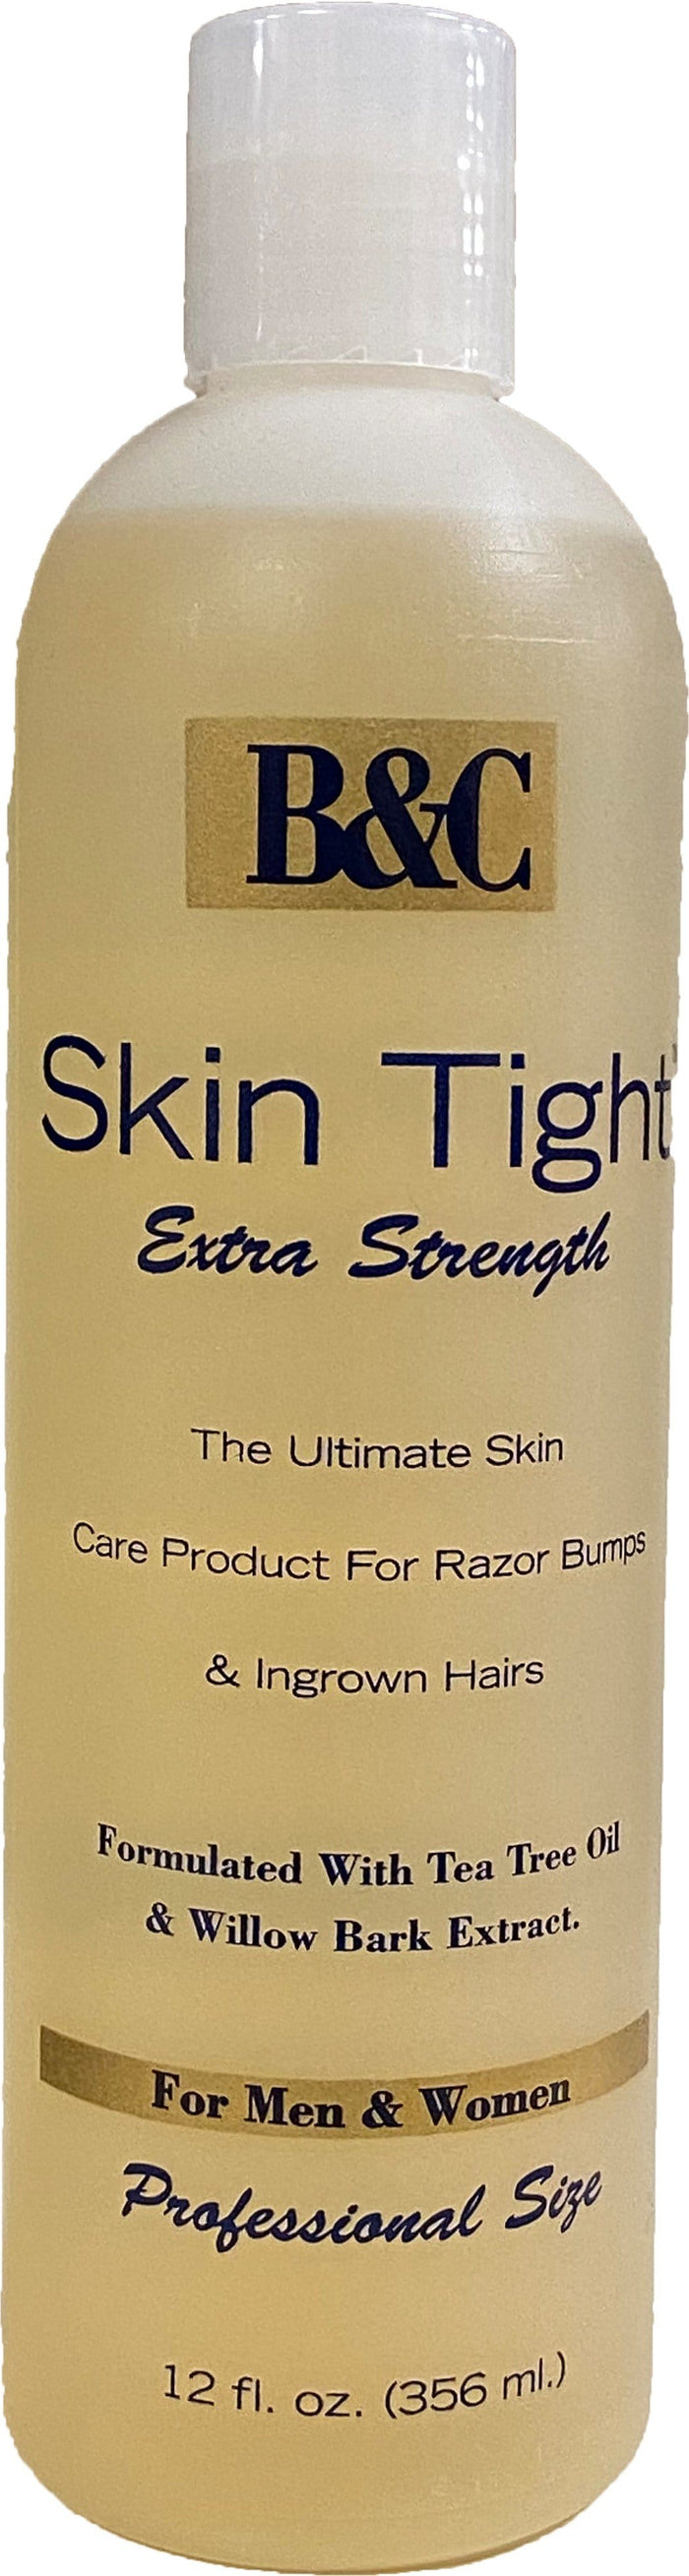 B&C Sking Tight Extra Strength Razor Bumps 356 ml